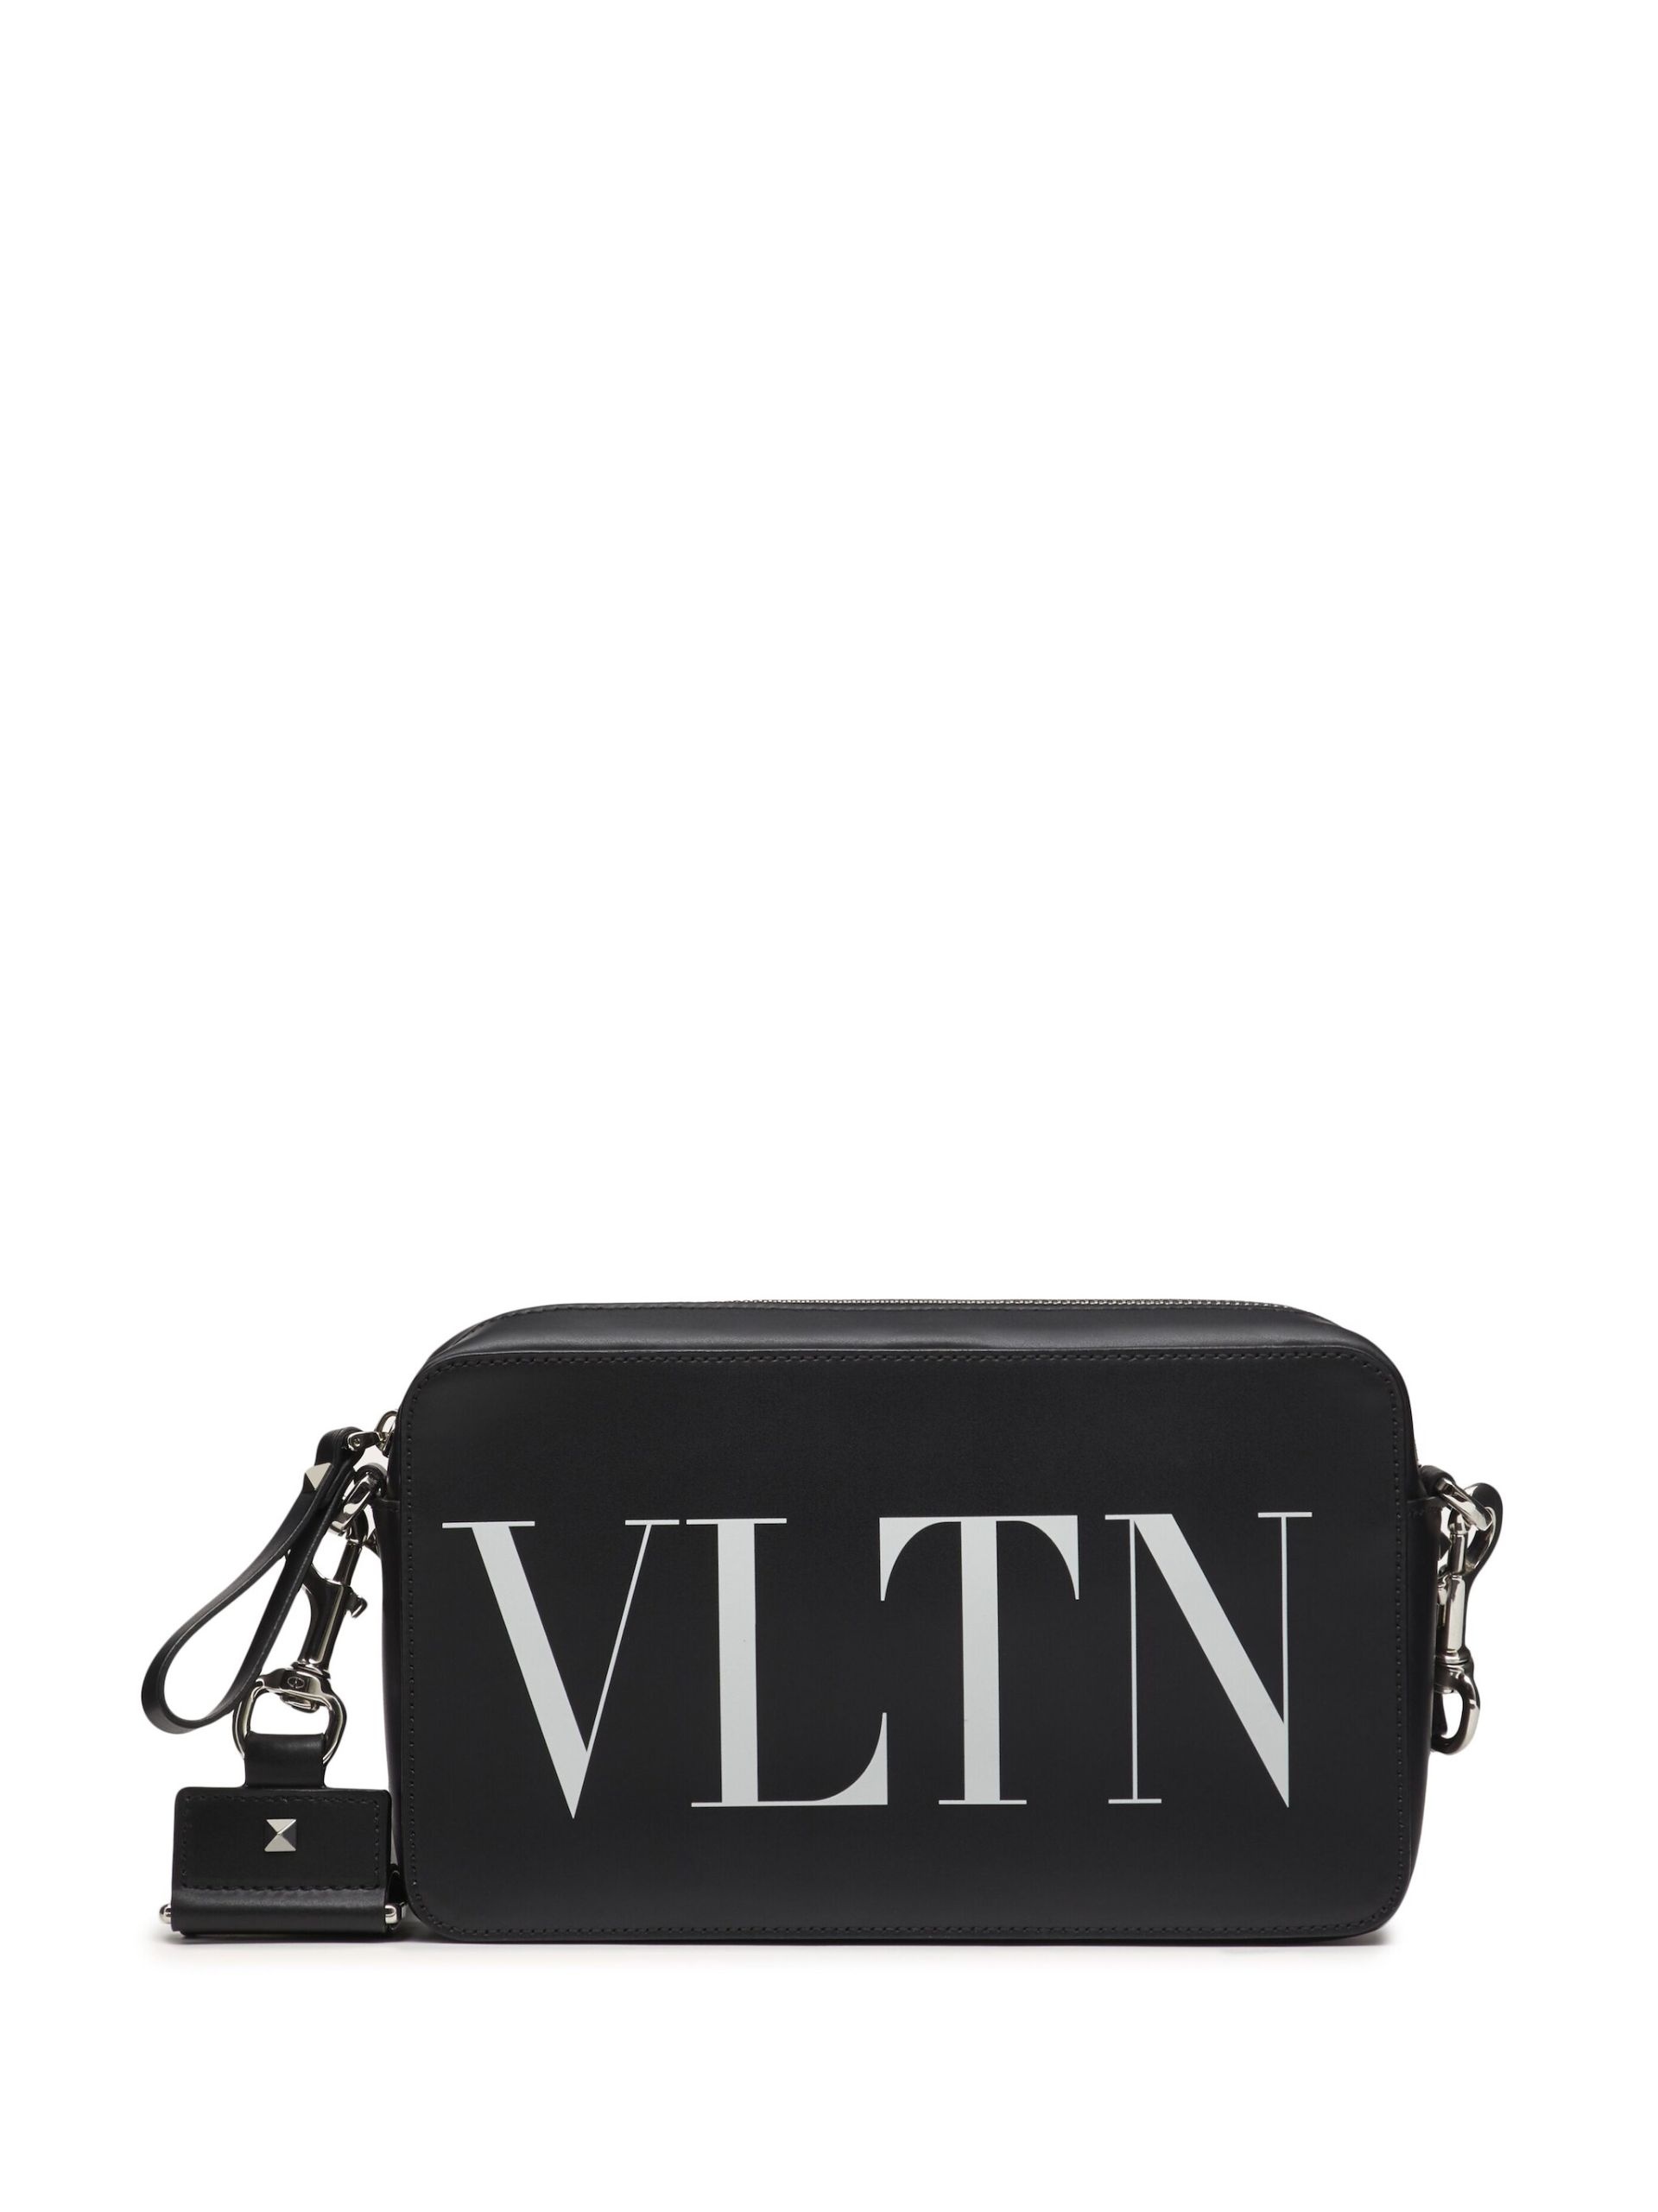 Black VLTN Leather Messenger Bag - 1